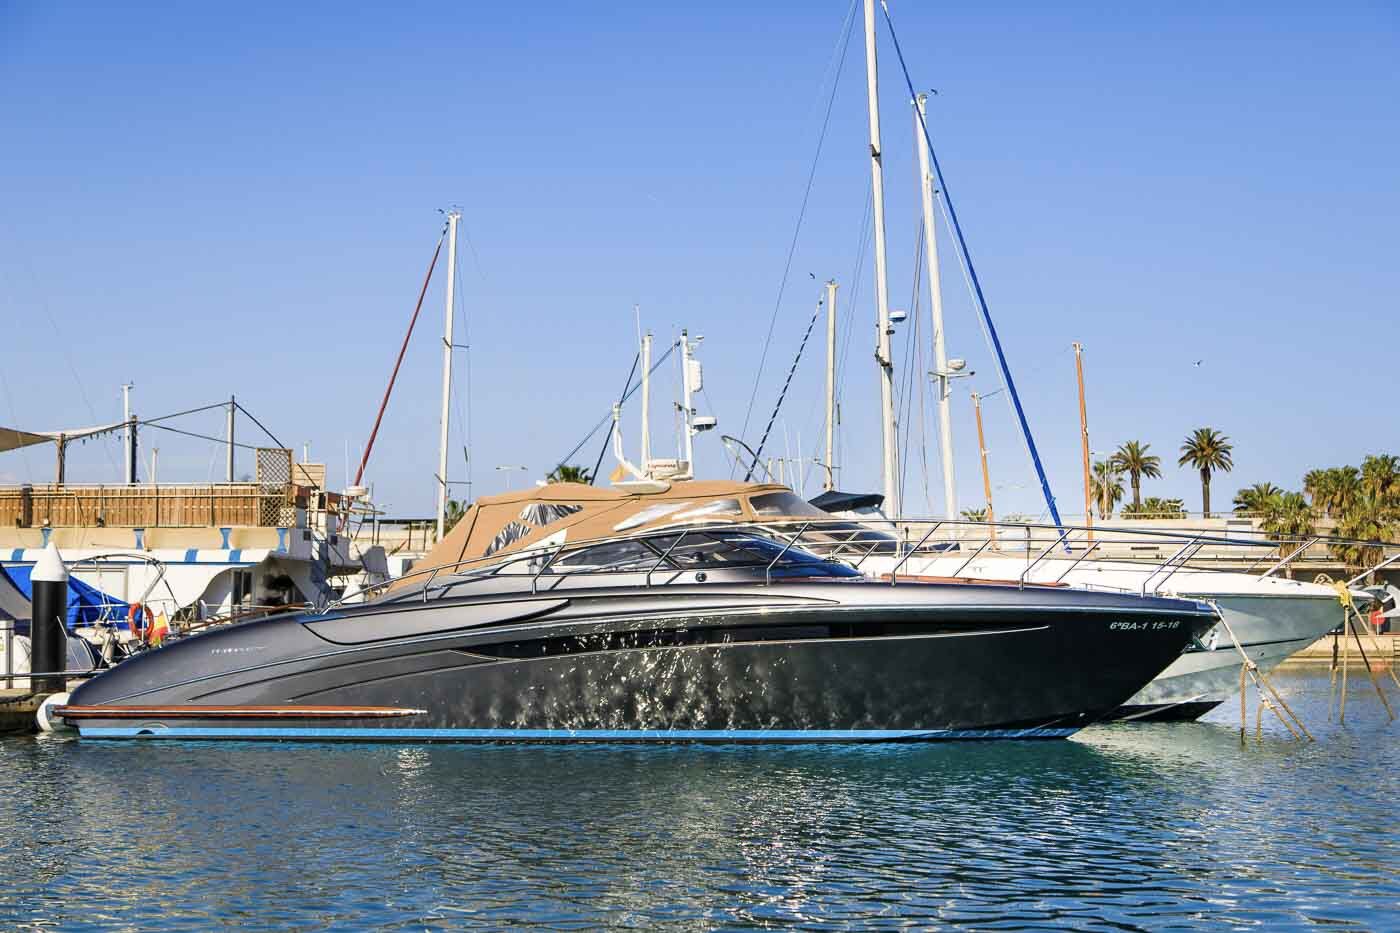 Barco de motor EN CHARTER, de la marca Riva modelo Rivaraman Super 14m y del año 2019, disponible en Marina Port Vell Barcelona Barcelona España